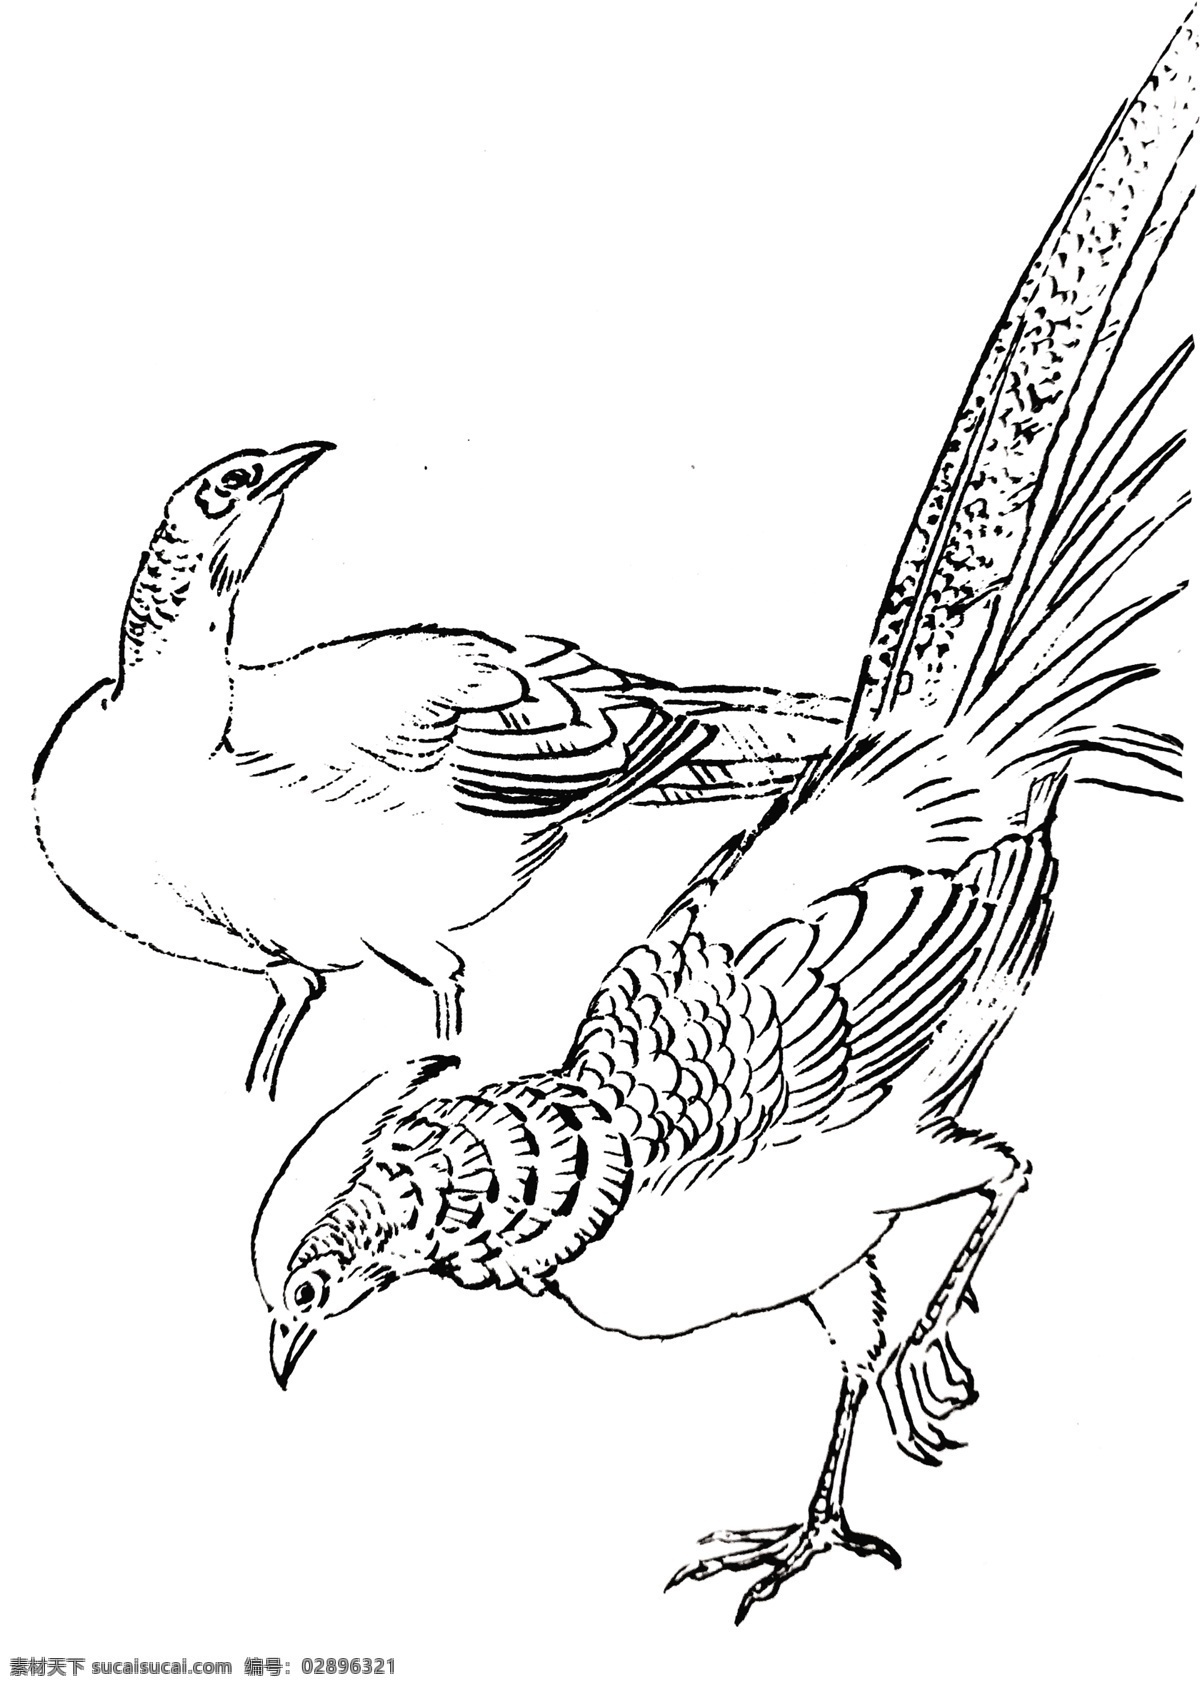 山鸡 锦雉 野鸡 线描 手绘 鸟 白描 飞禽 飞鸟 手稿 雉 分层